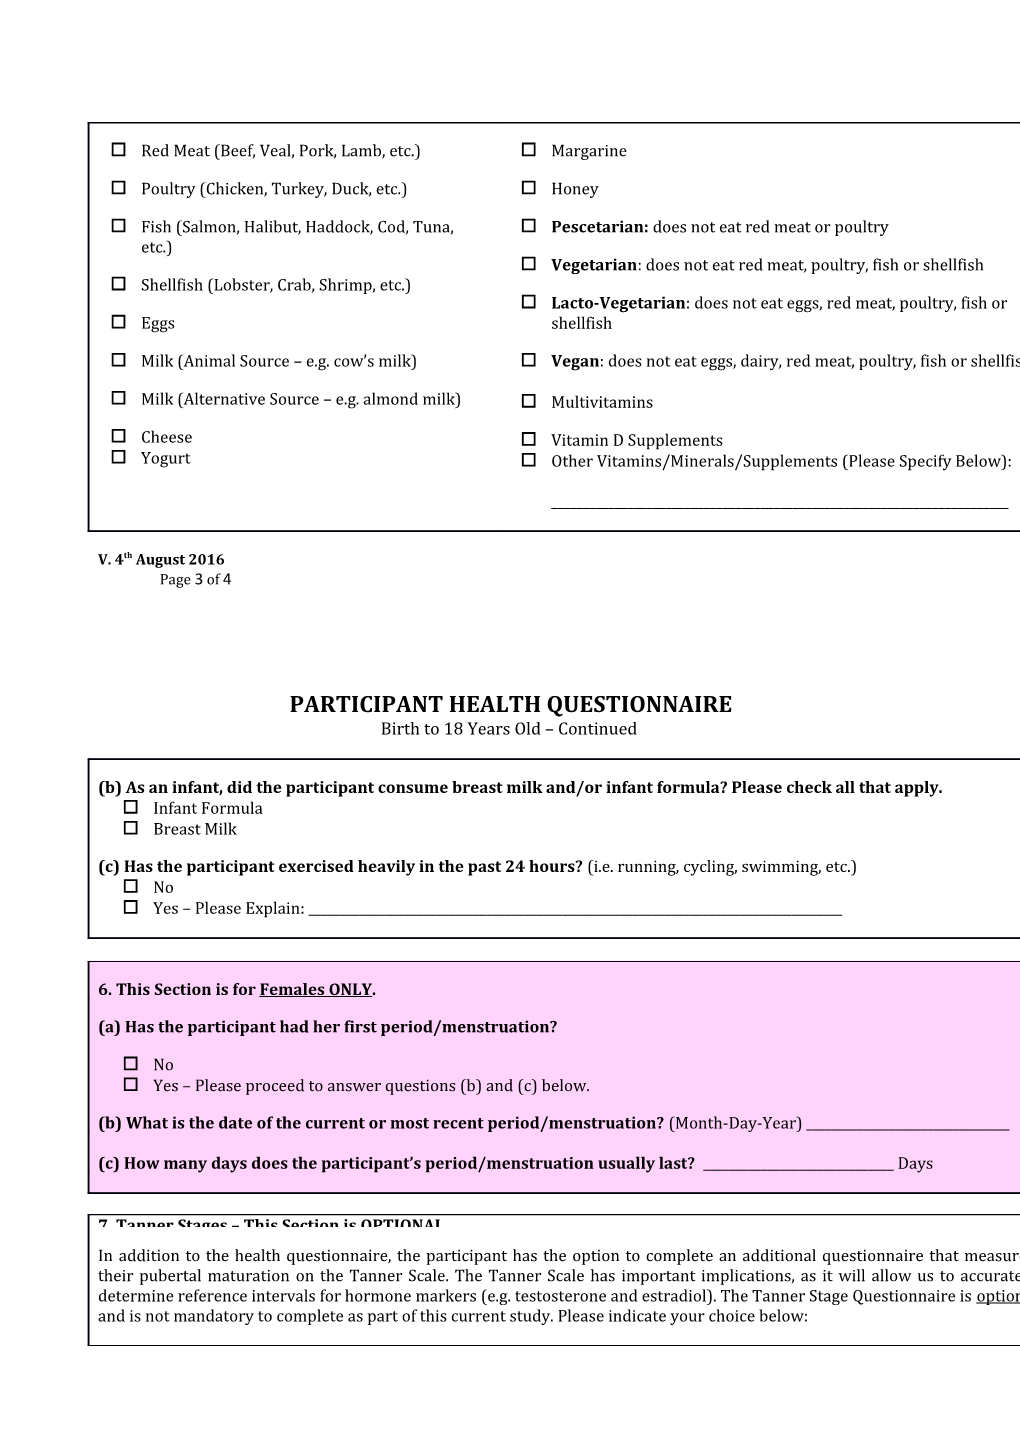 Participant Health Questionnaire